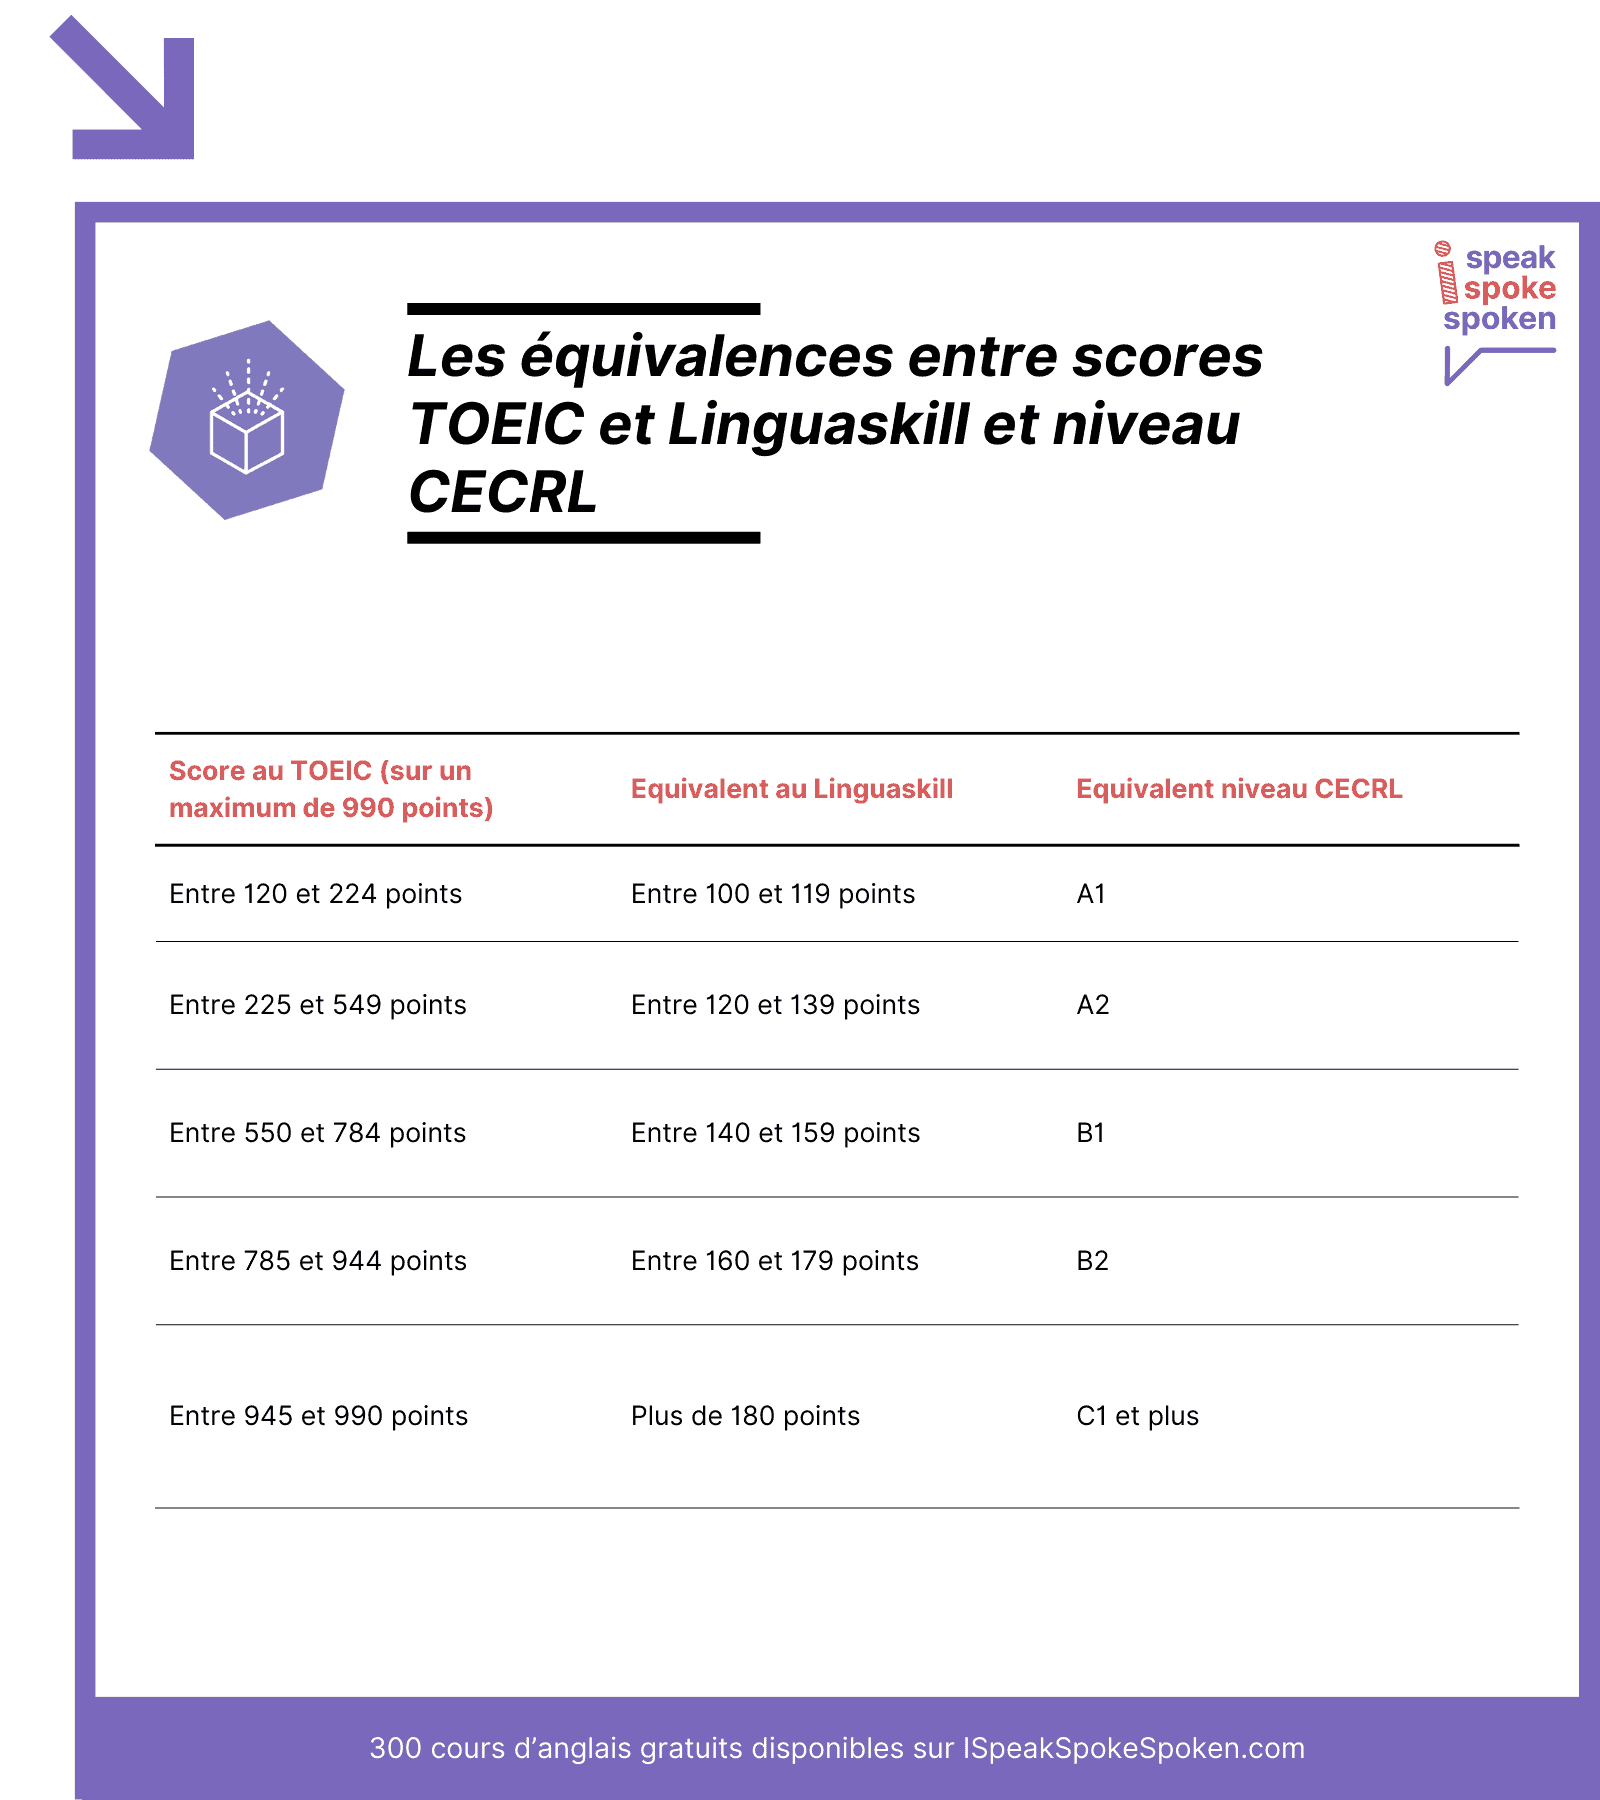 Les équivalences entre scores TOEIC, scores Linguaskill et niveaux CECRL